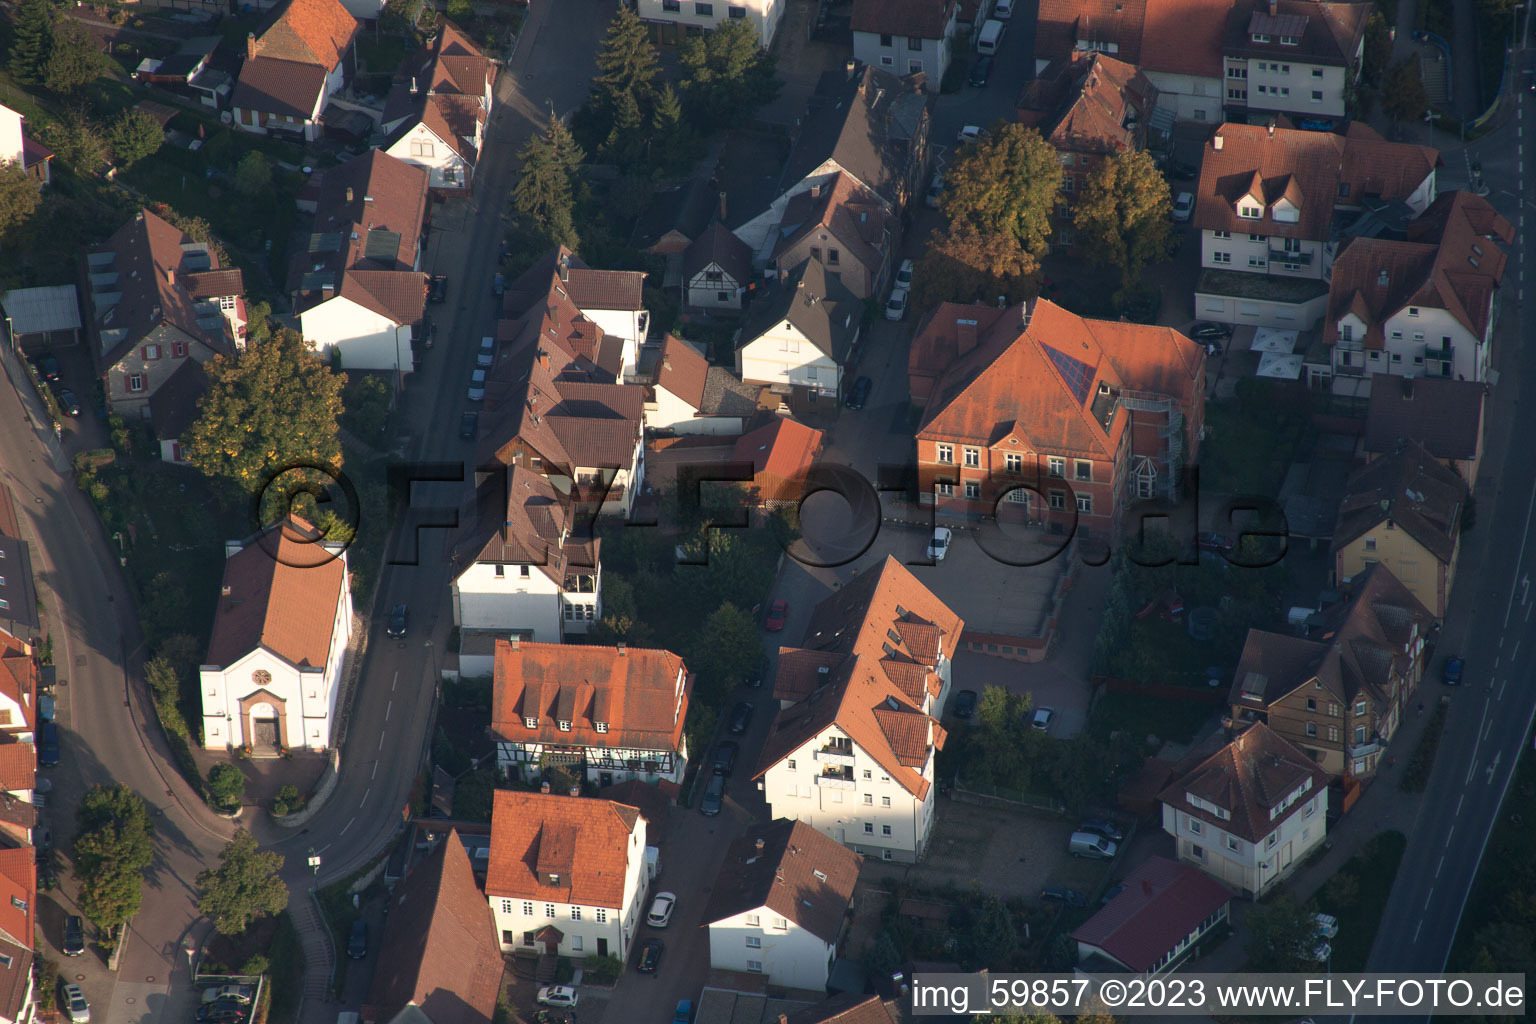 Ispringen im Bundesland Baden-Württemberg, Deutschland von einer Drohne aus